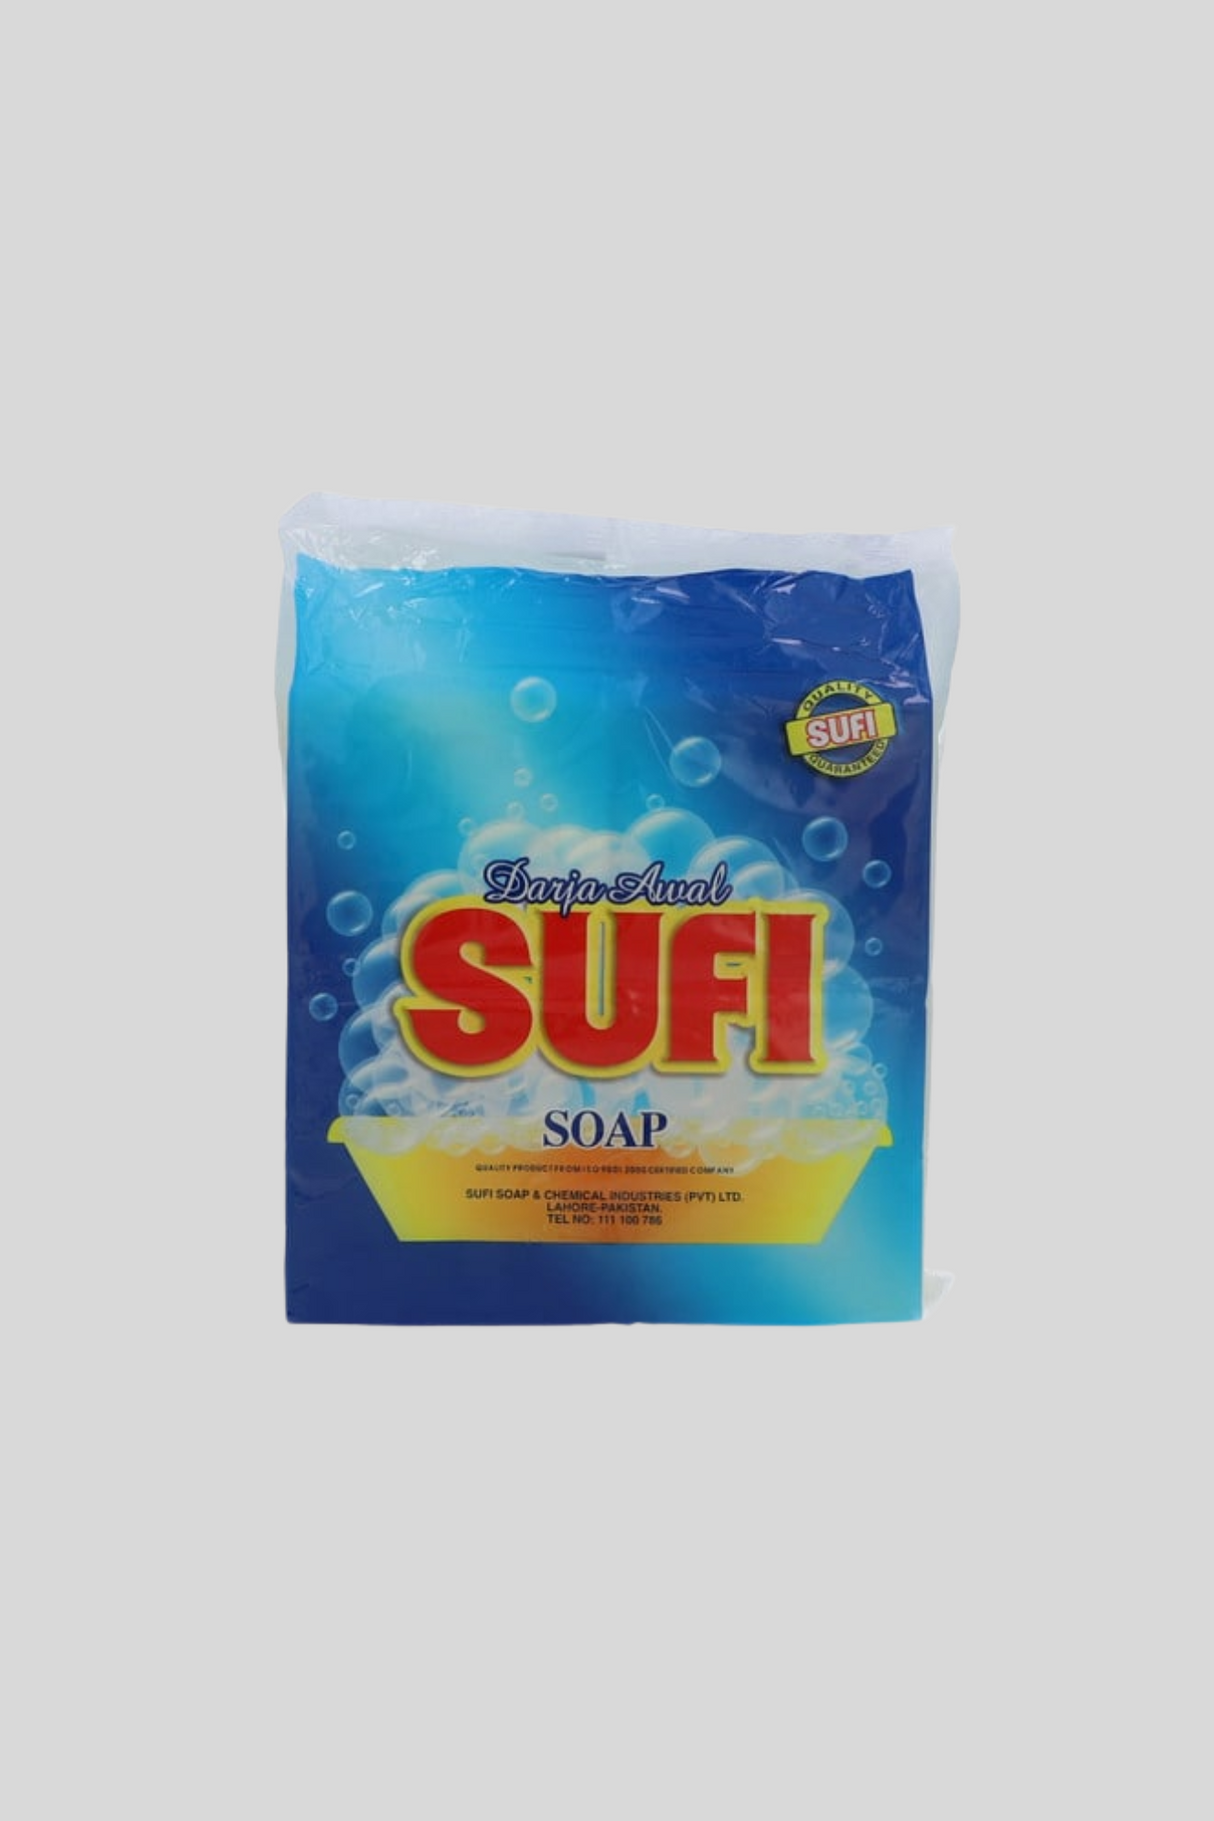 sufi soap darja awal 1kg